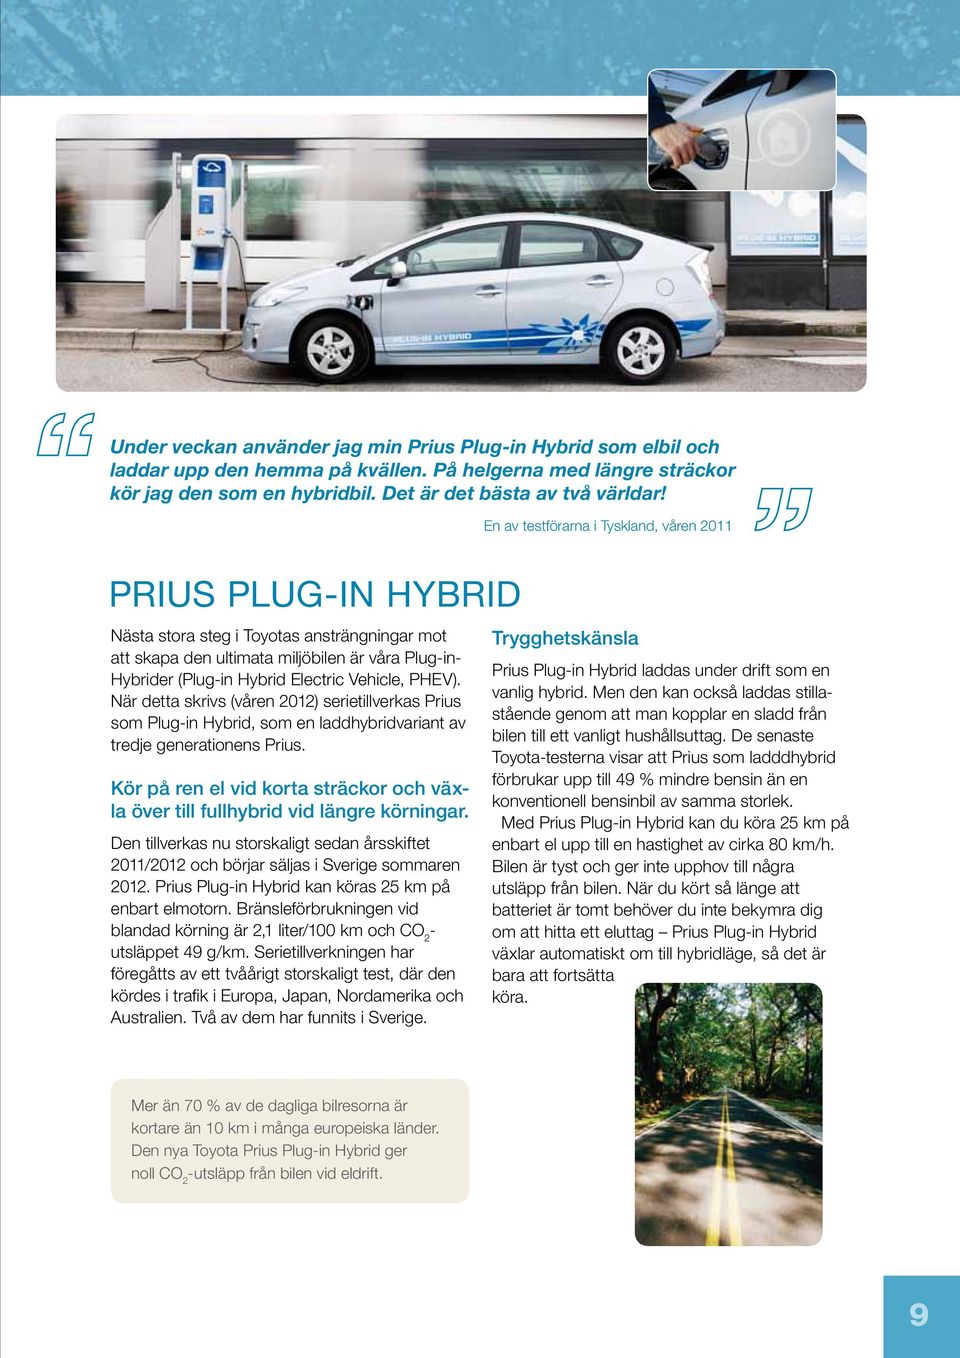 Vehicle, PHEV). När detta skrivs (våren 2012) serietillverkas Prius som Plug-in Hybrid, som en laddhybridvariant av tredje generationens Prius.